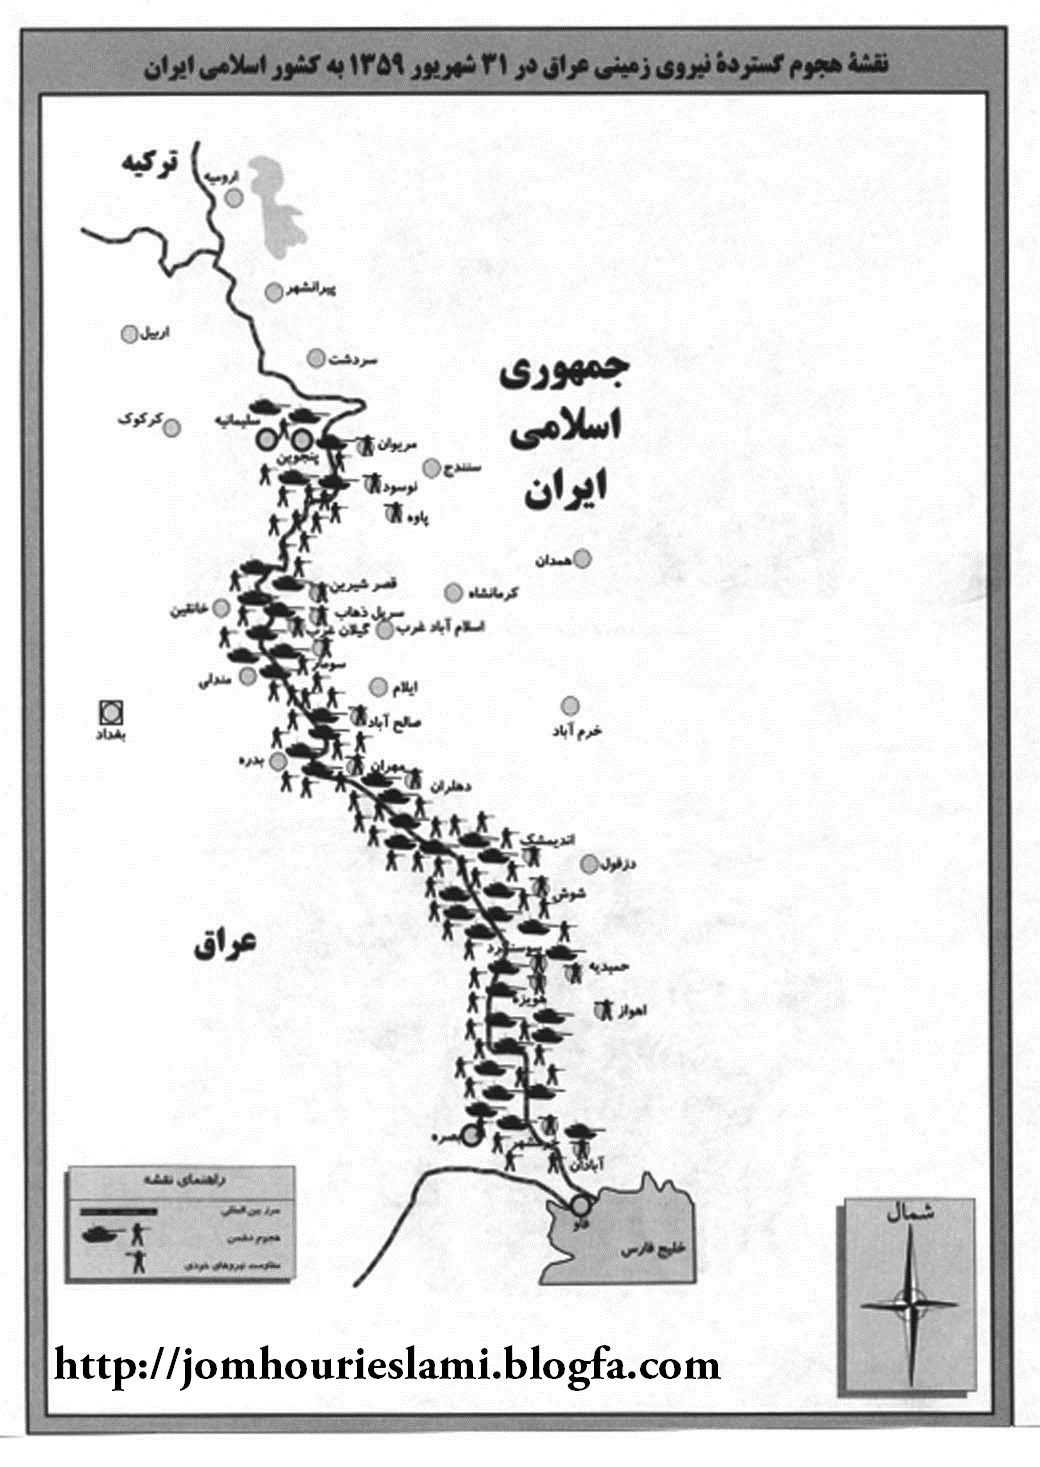 نقشه هجوم عراق به ایران در سال 1359